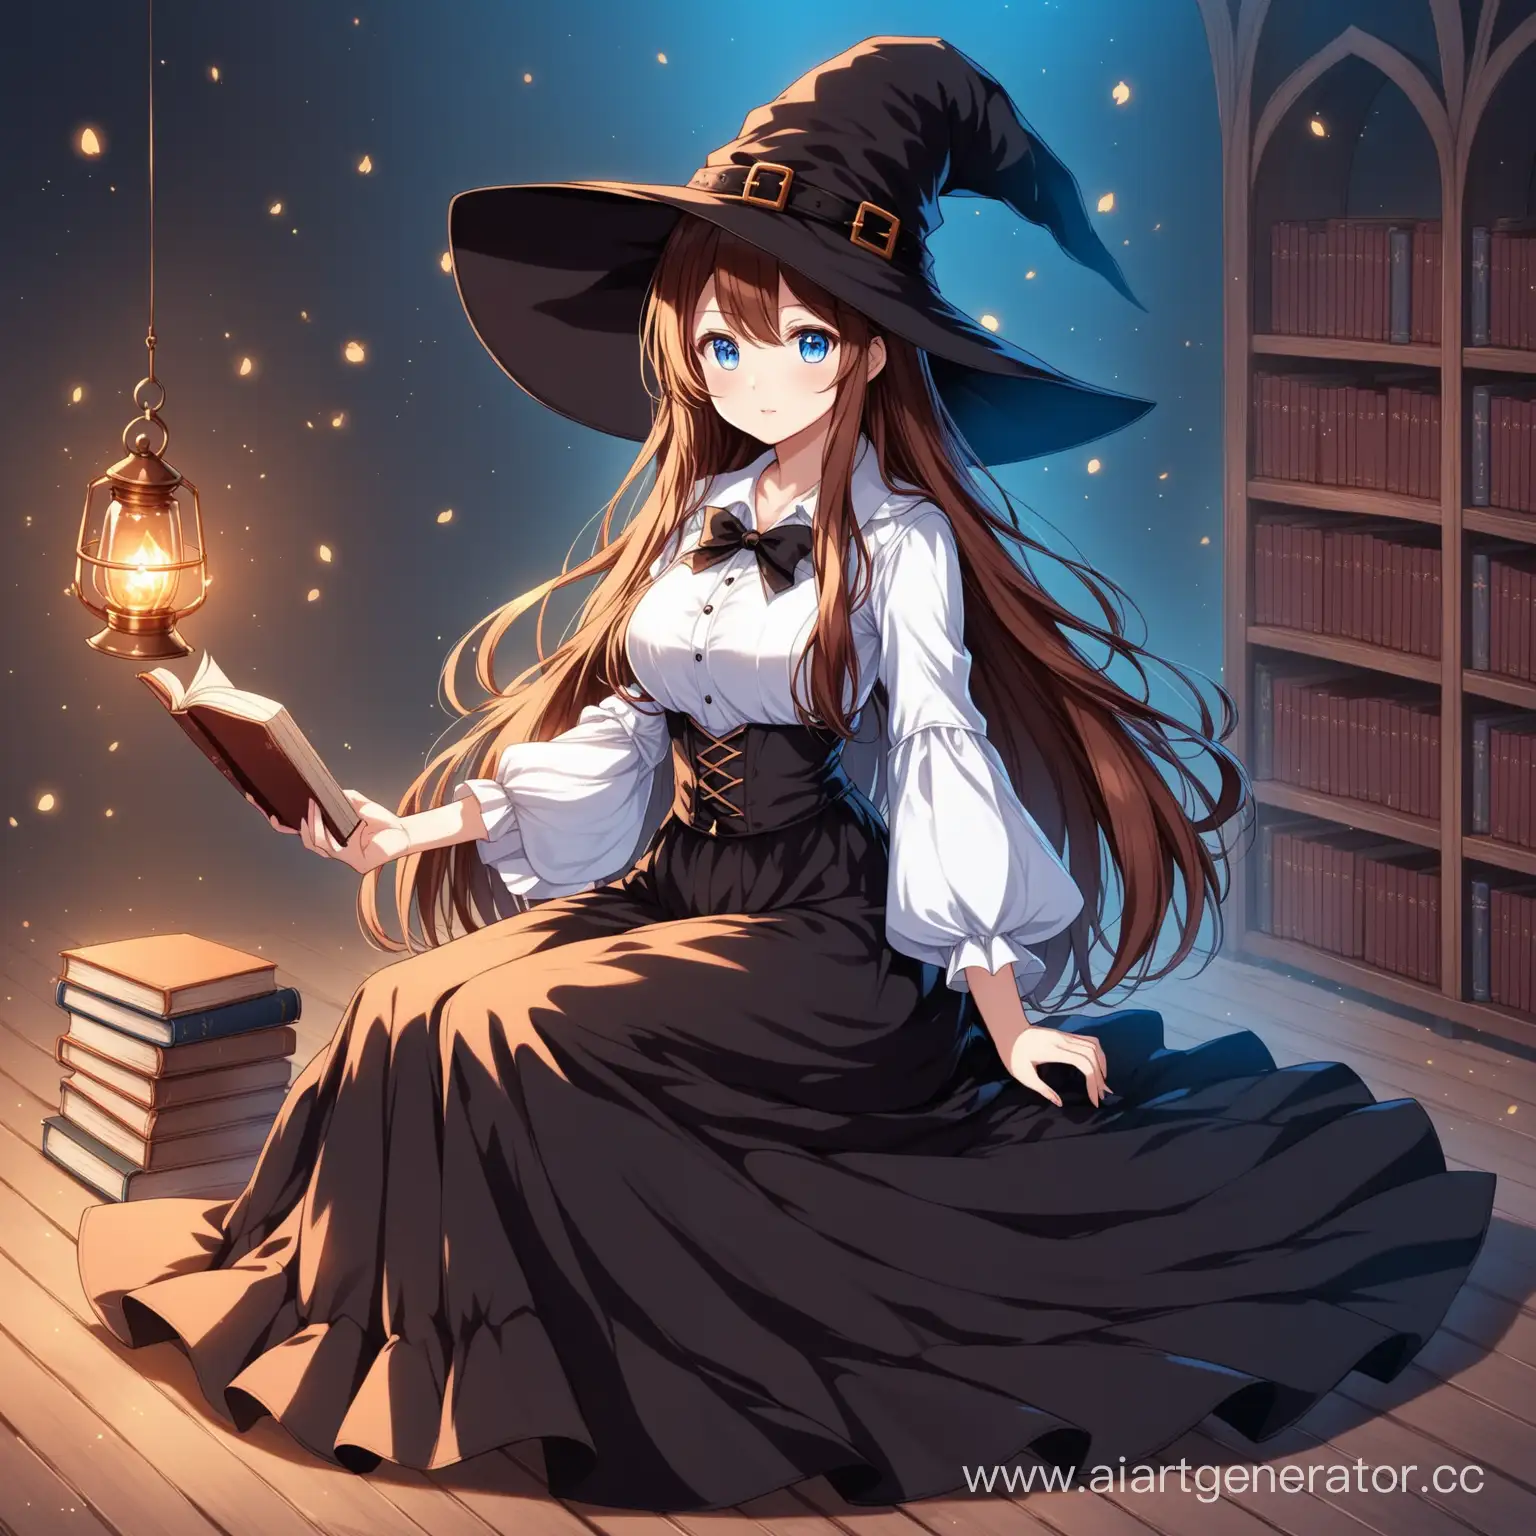 Аниме девушка с голубыми глазами, длинные каштановые волосы, женственная, в костюме ведьмы, шляпа ведьмы, длинная юбка и белая рубашка, книга в руке